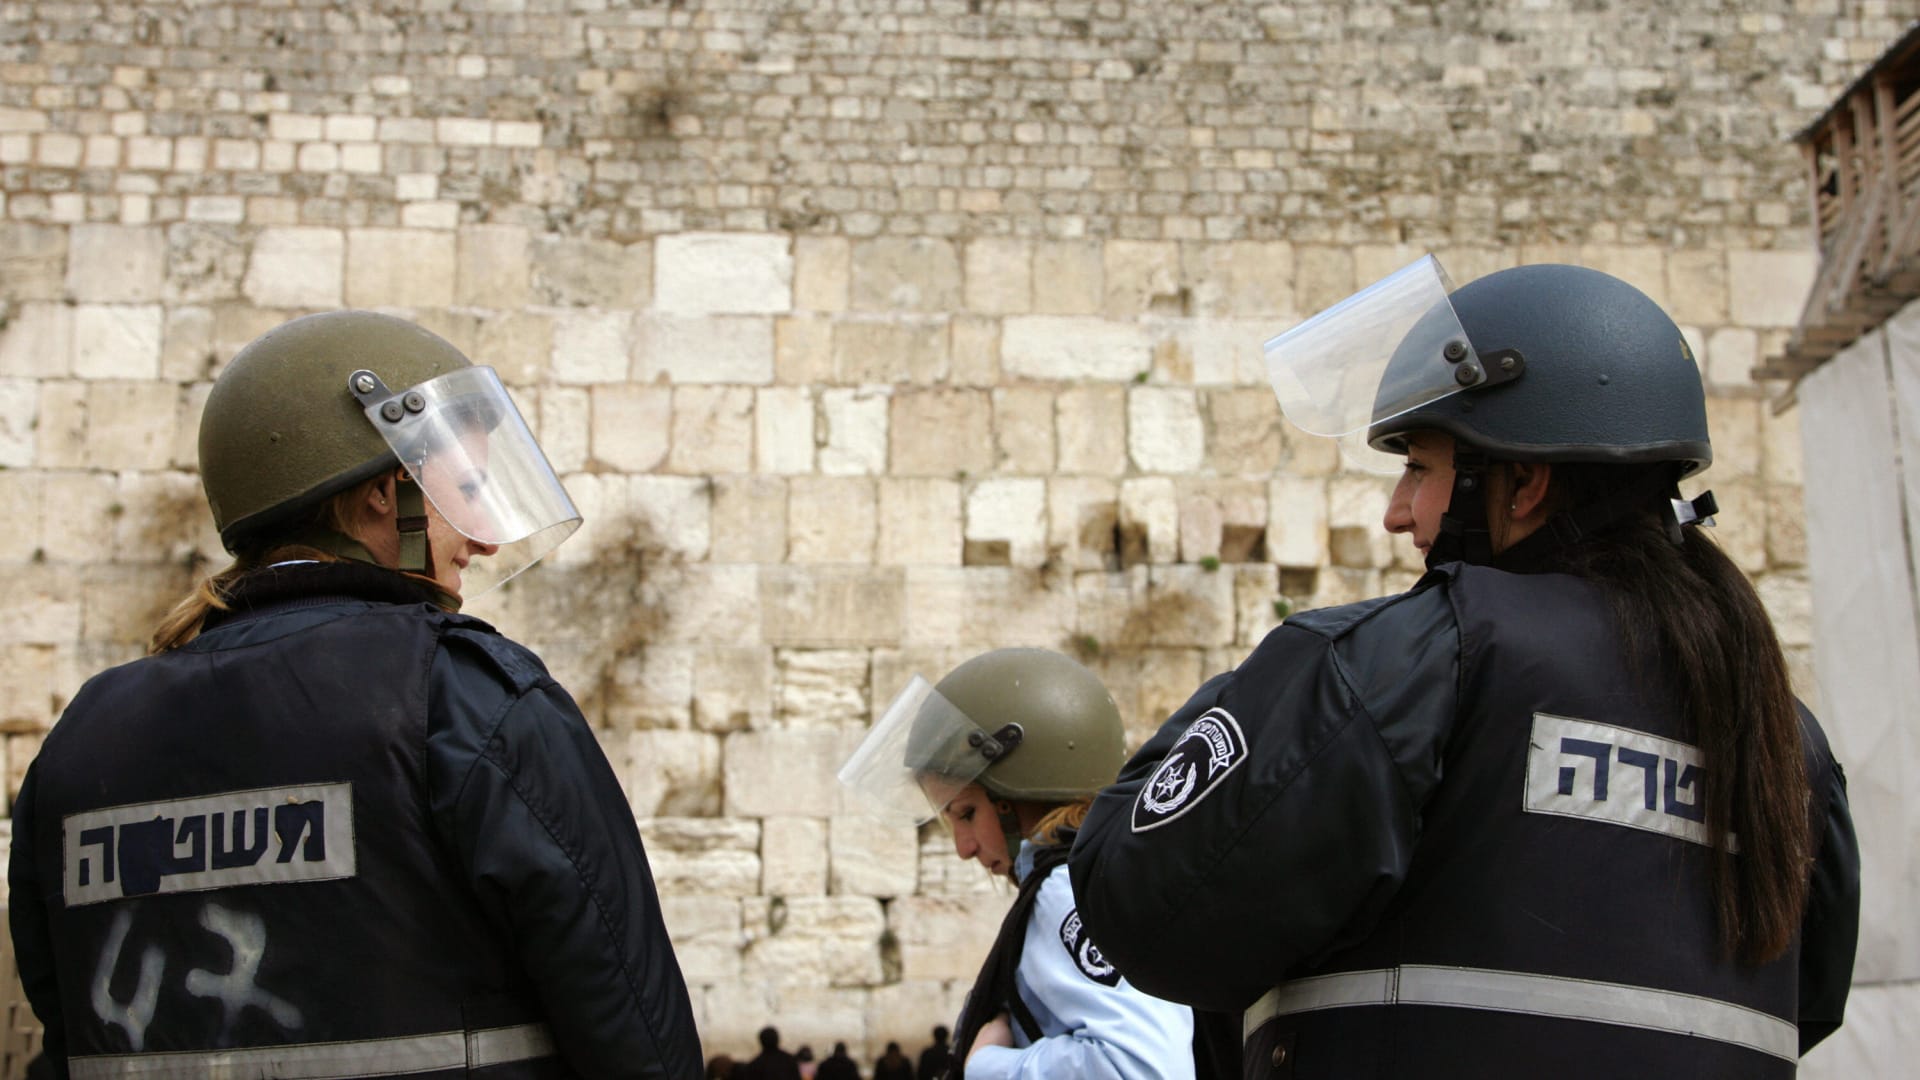 الشرطة الإسرائيلية: إصابة شرطيتين في "هجوم إطلاق نار وطعن" في القدس ومقتل "الإرهابيين الثلاثة"